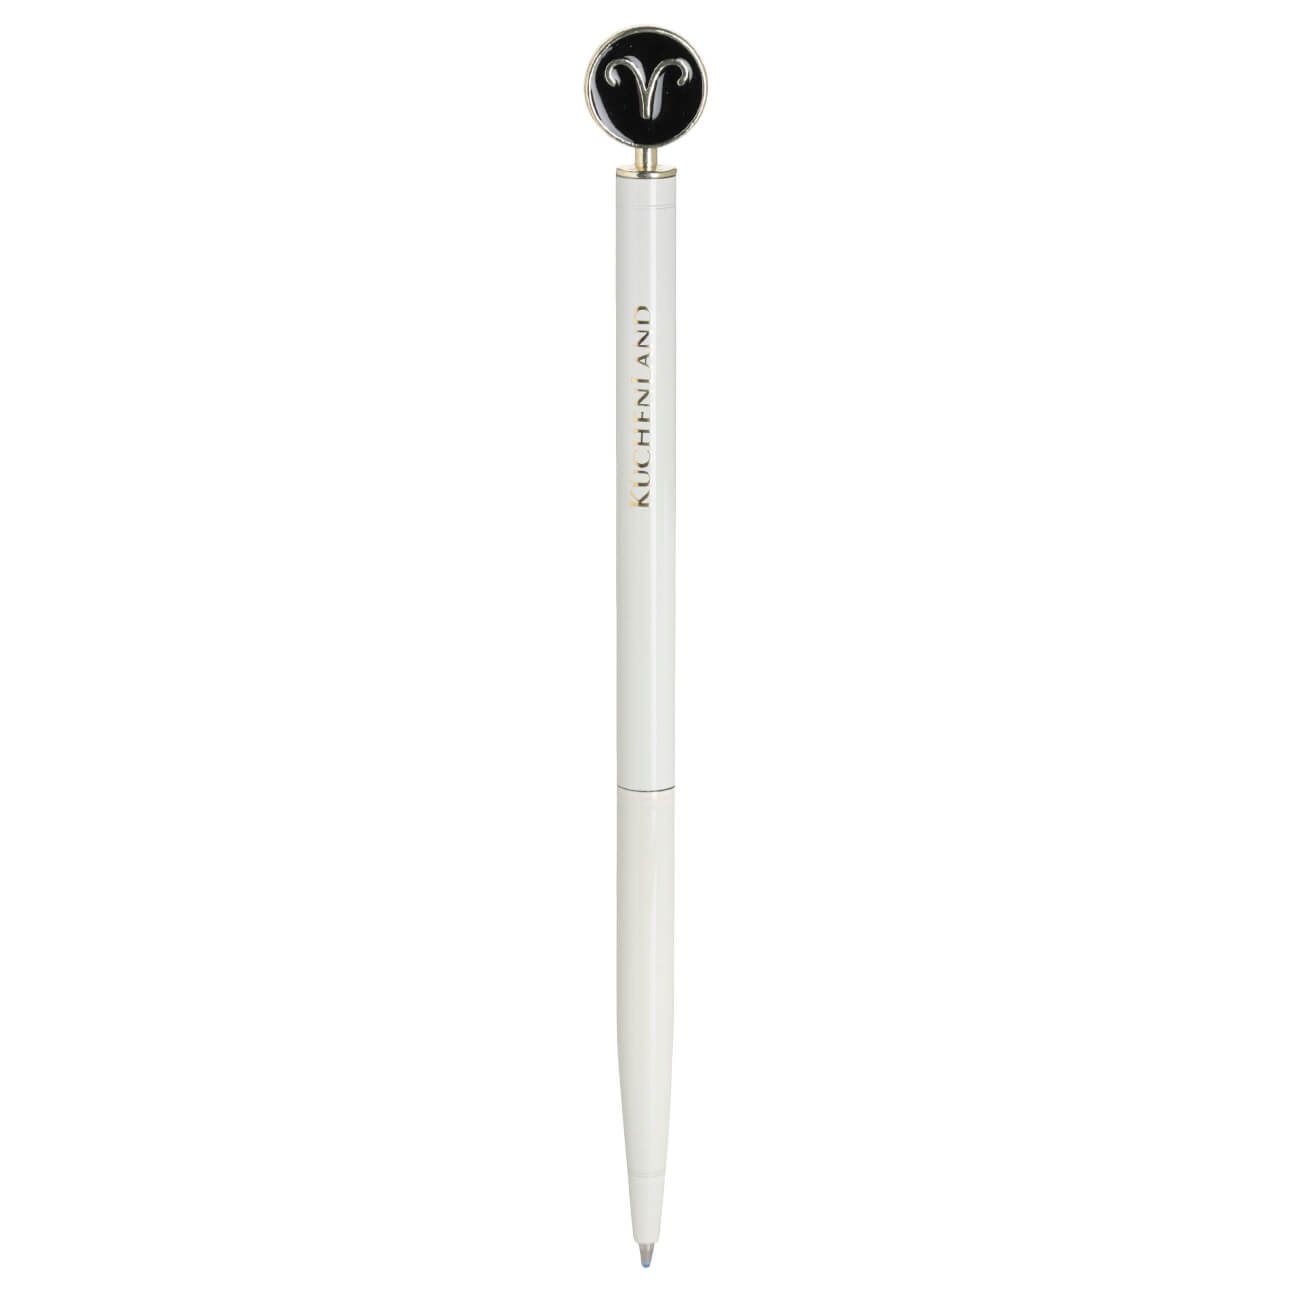 Ручка шариковая, 15 см, с фигуркой, сталь, молочно-золотистая, Овен, Zodiac ручка скоба cappio м о 96 мм